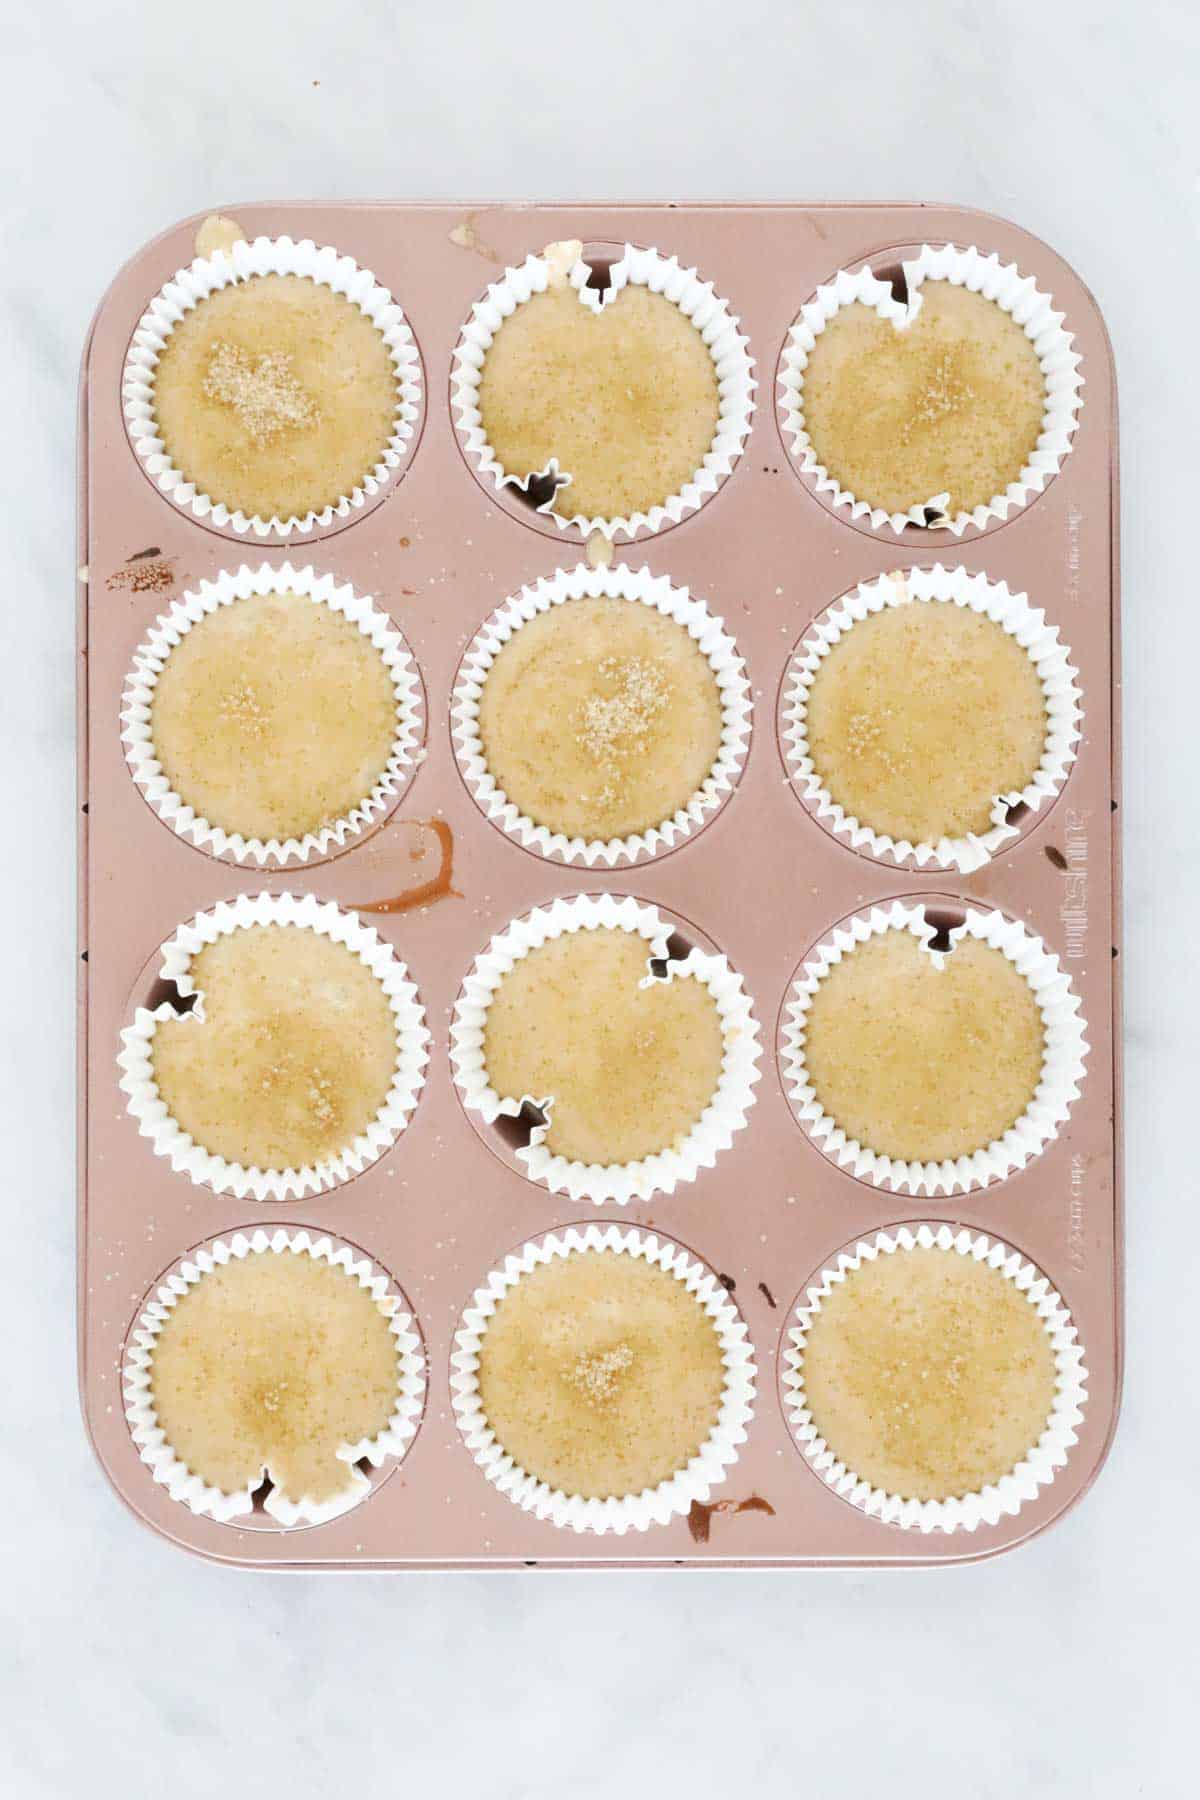 Banana muffins in a muffin tray.